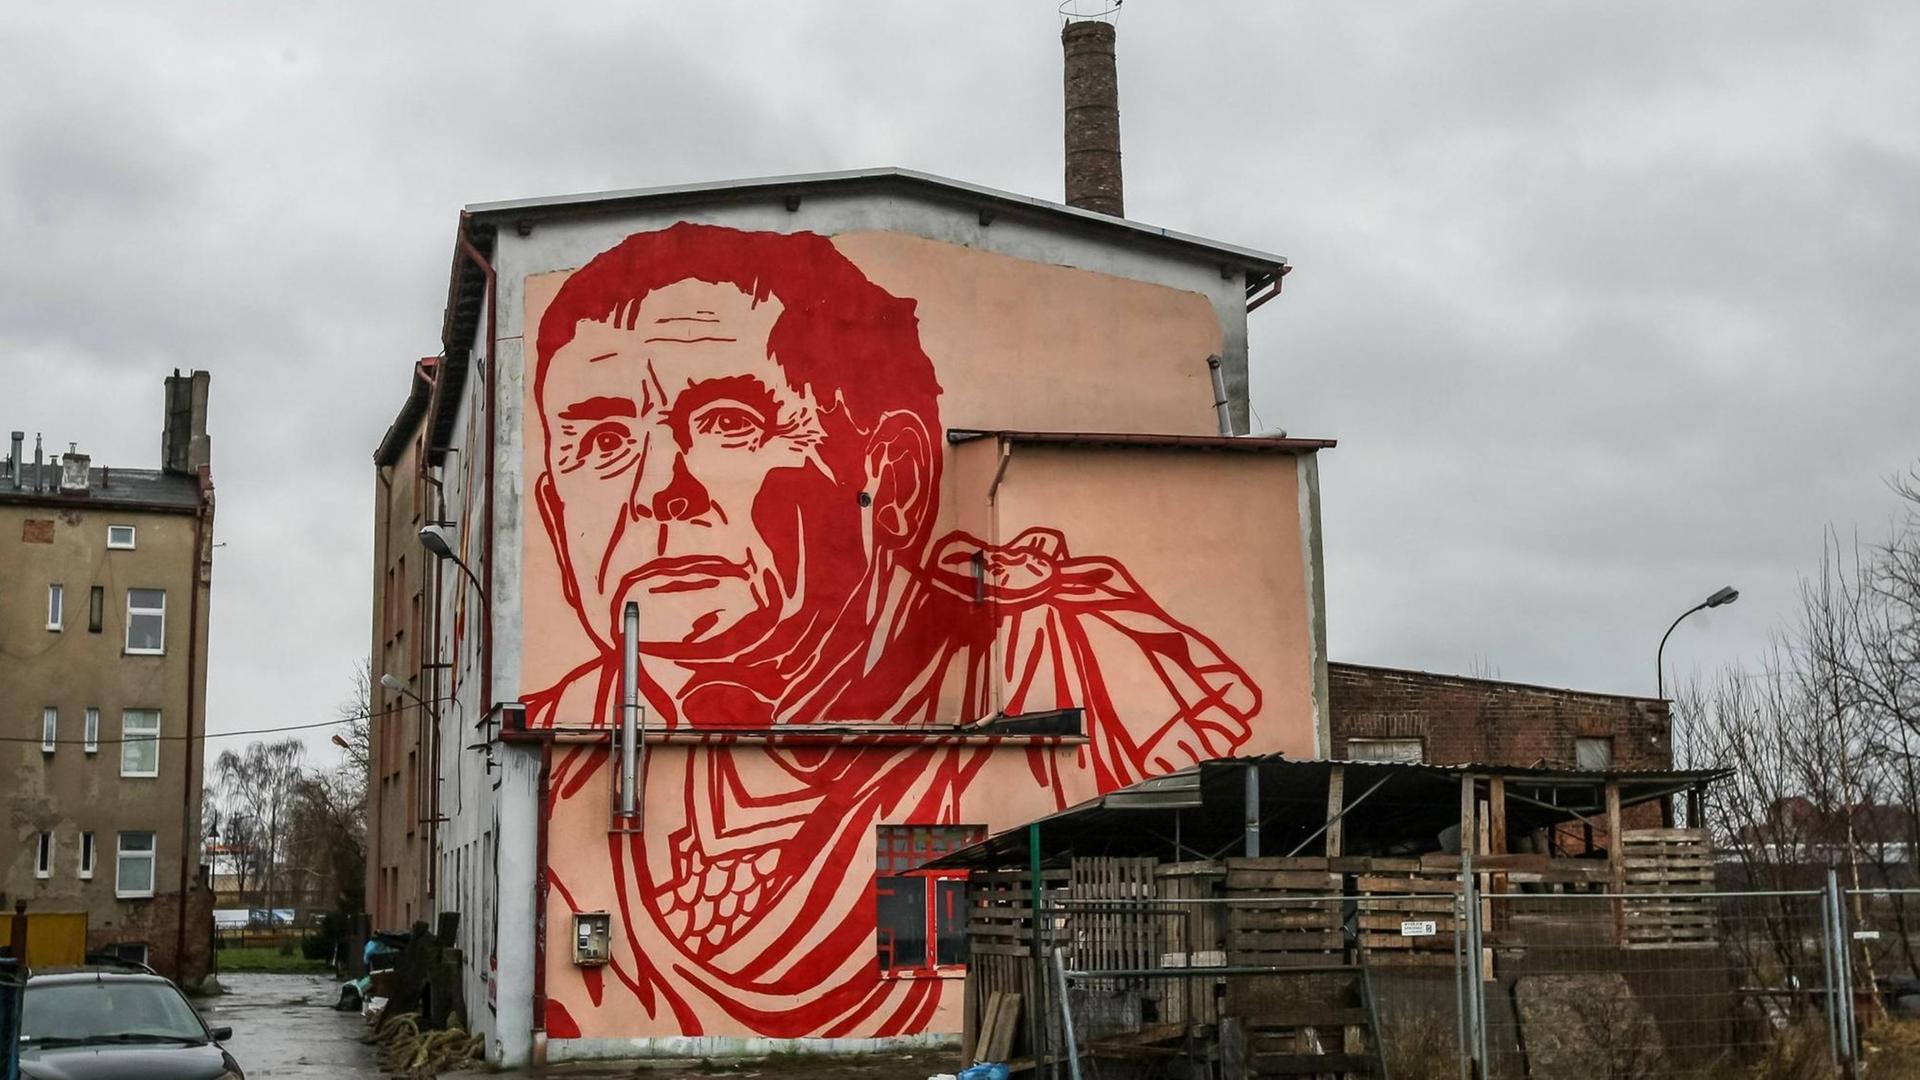 Eine Wandmalerei des Street art Künstlers Mariusz Waras zeigt in blutrot den polnischen Politiker Jaroslaw Kaczynski, Vorsitzender der nationalkonservativen PiS-Partei in einer römischen Toga als Julius Cäsar an einer Häuserwand in Danzig / Gdansk, Polen.